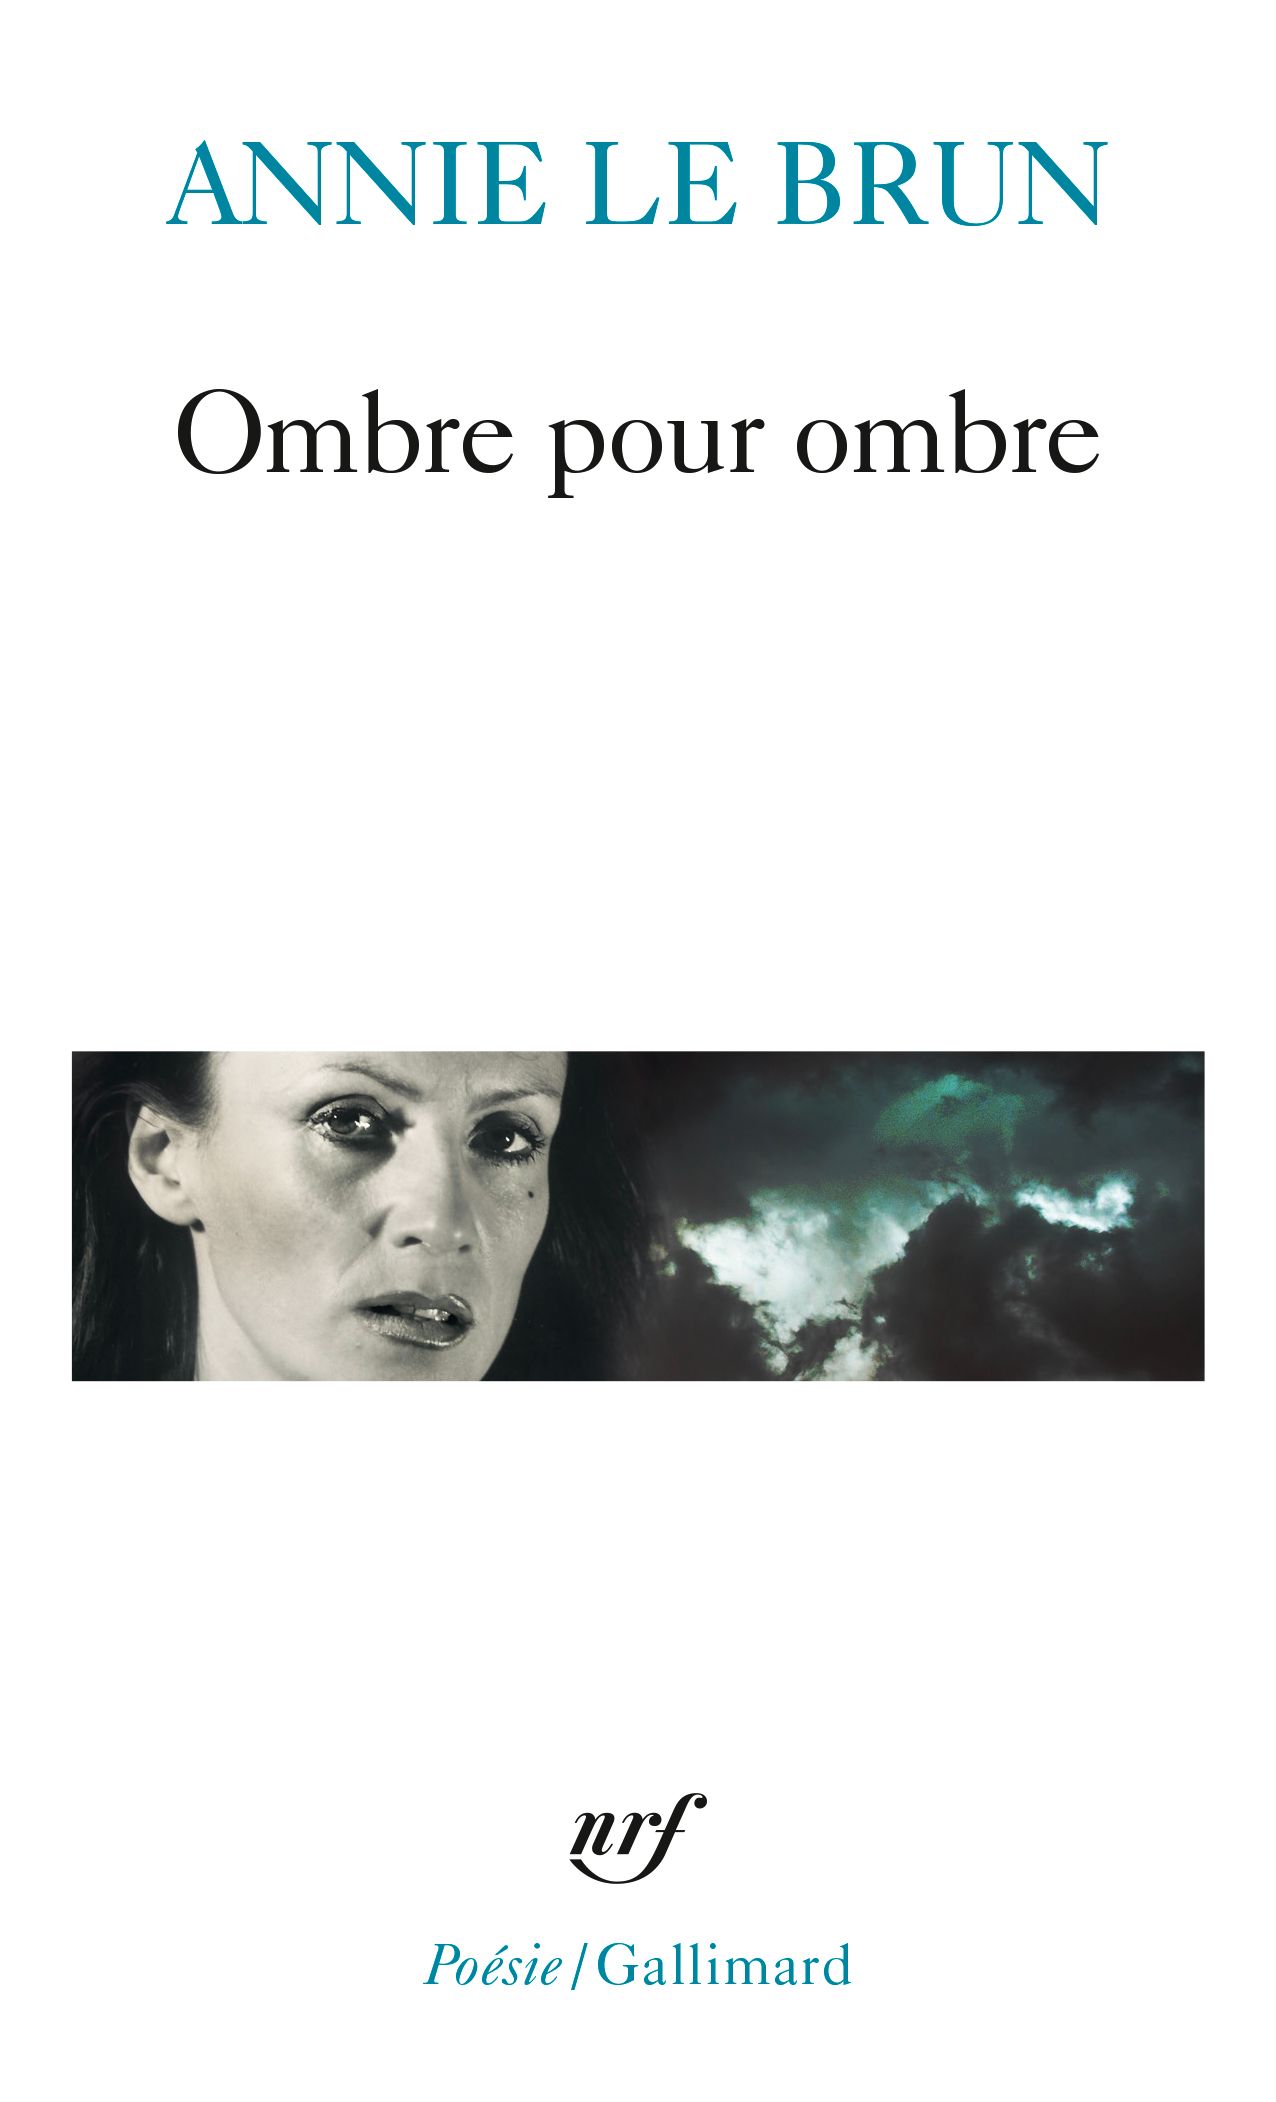 Annie Le Brun, Ombre pour ombre